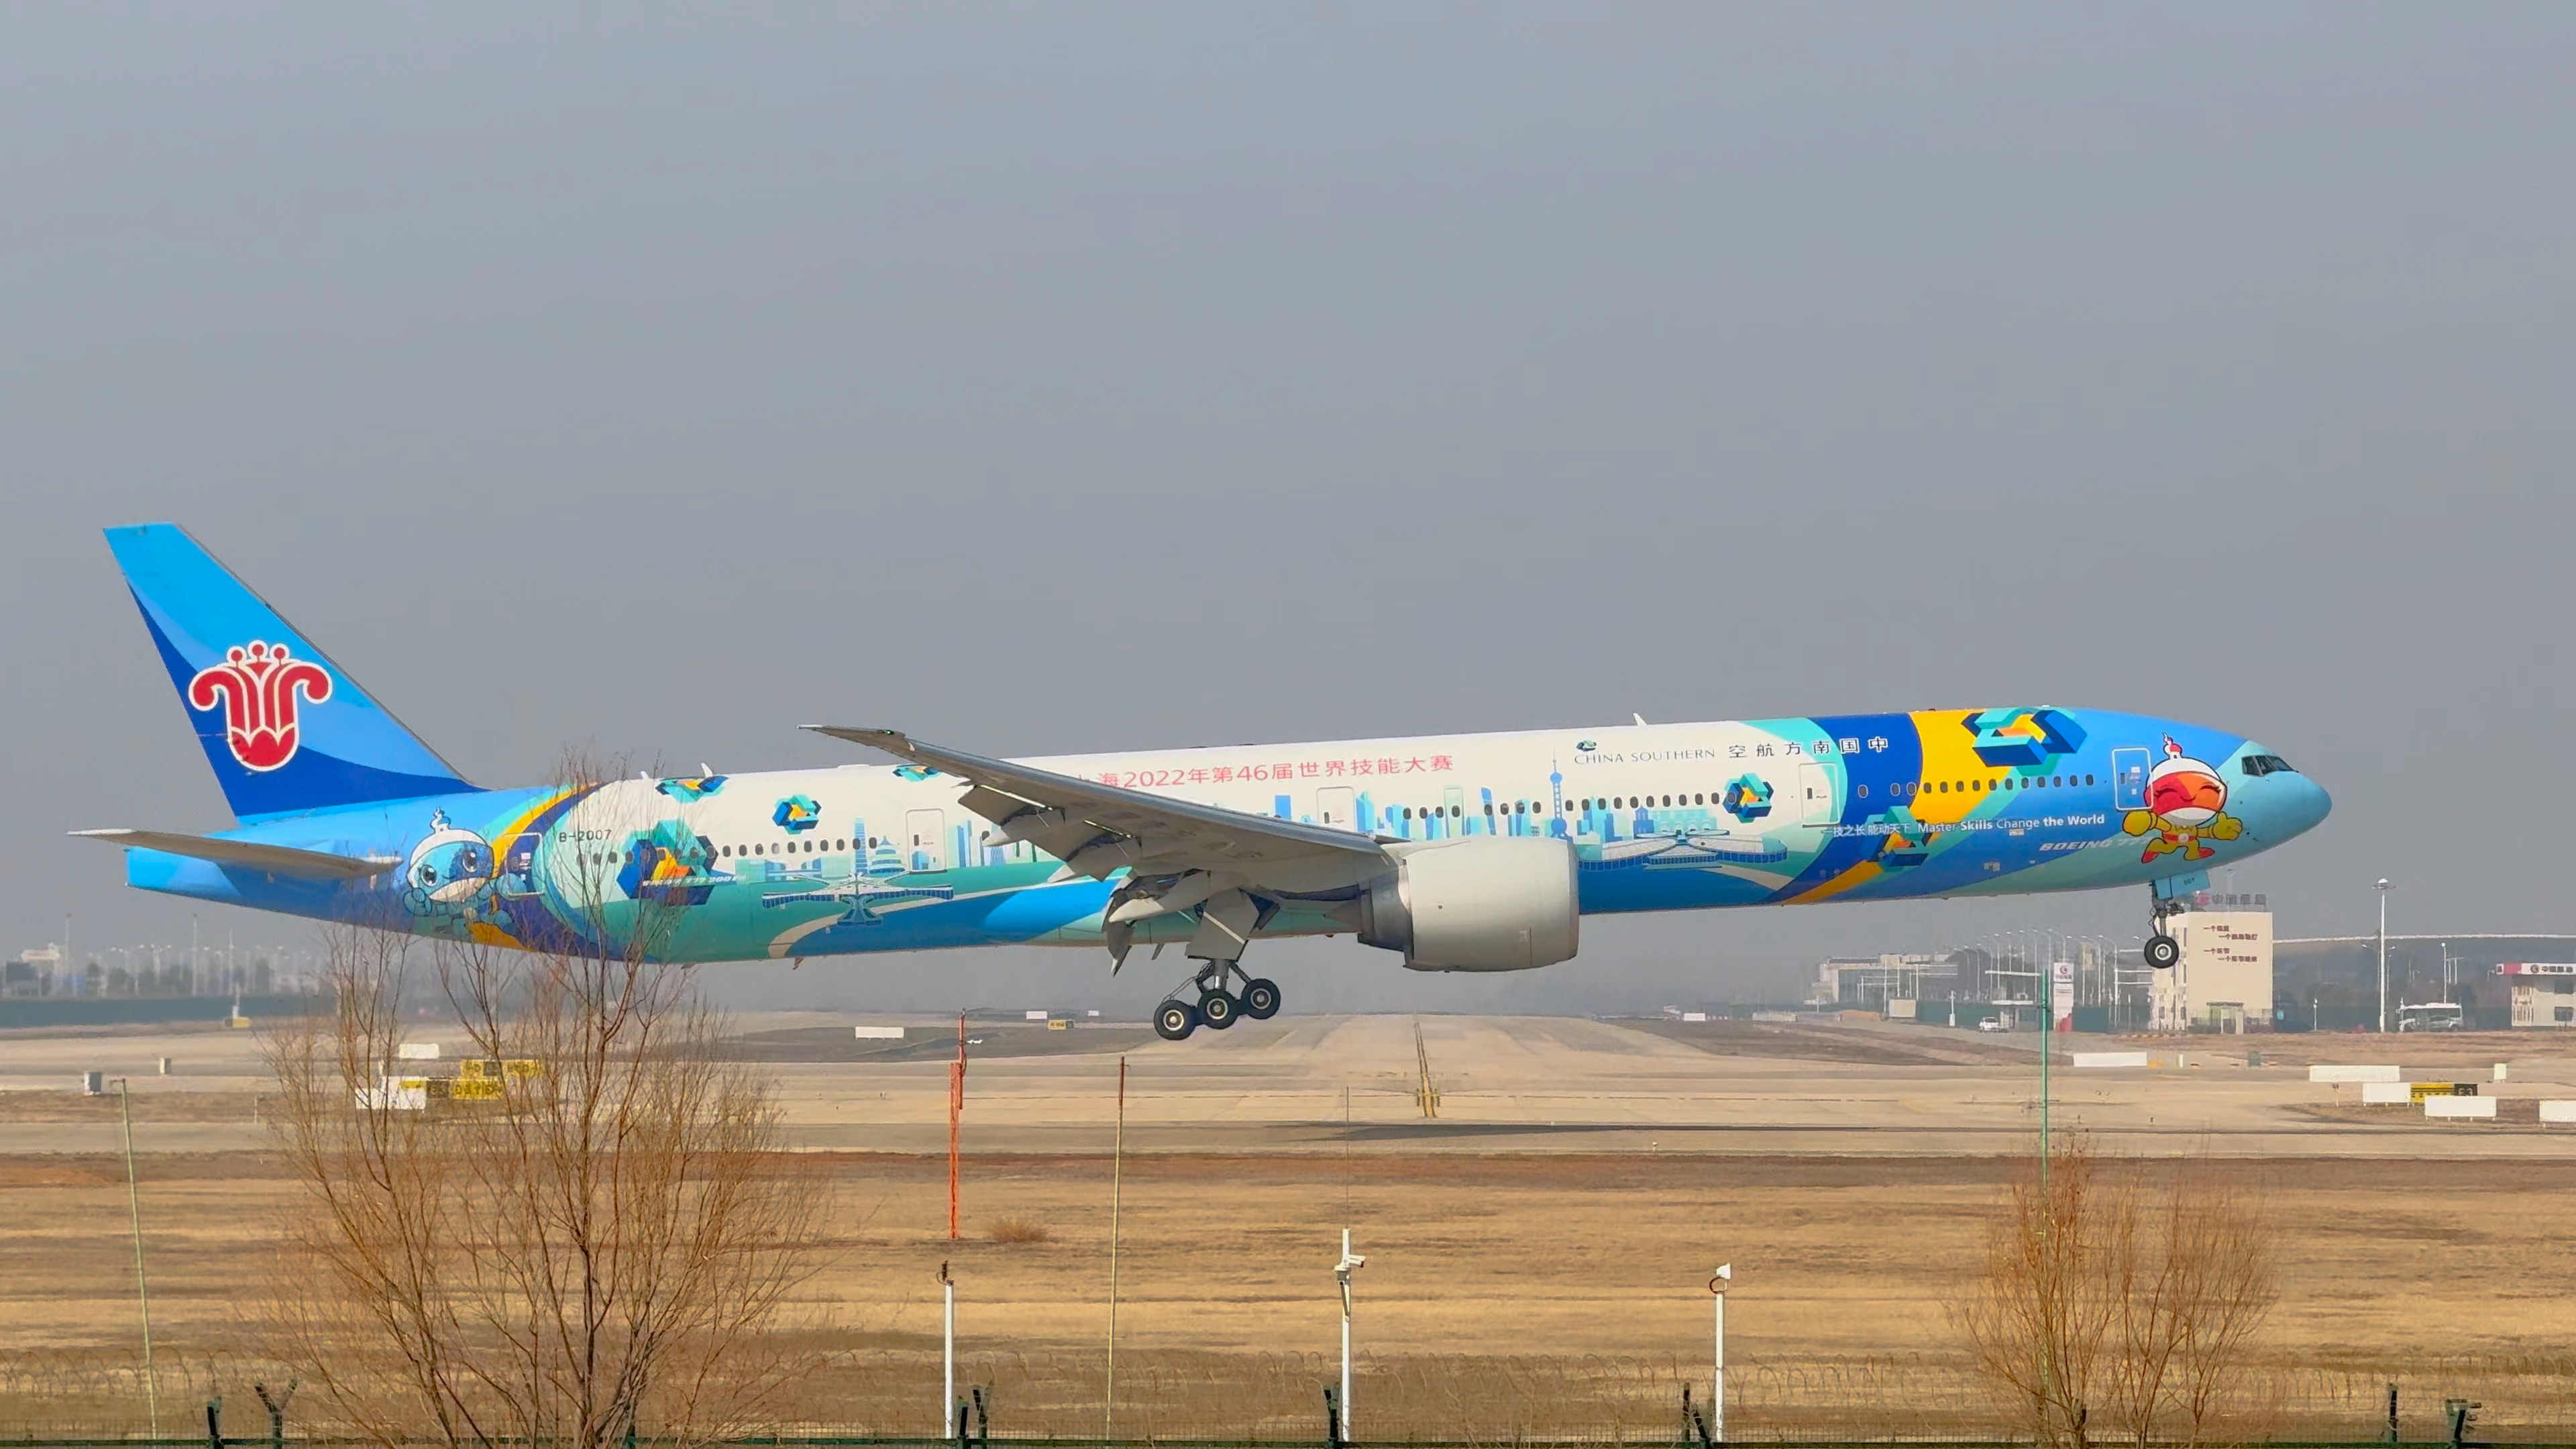 南航上海技能大赛彩绘涂装落地霾汉市,波音777最大双发宽体